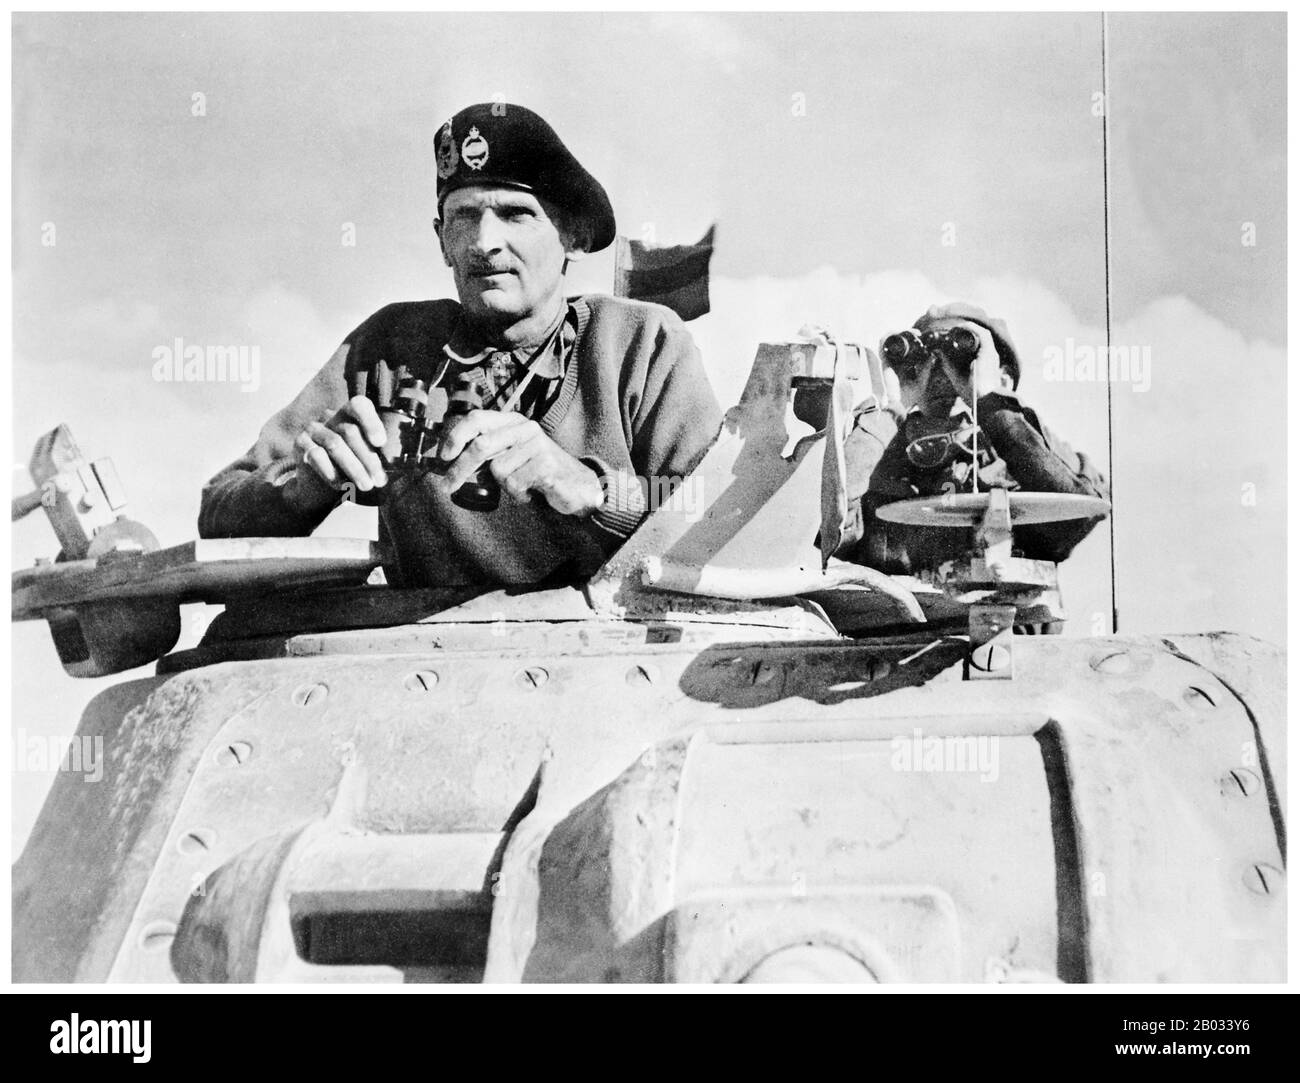 La Seconda battaglia di El Alamein (23 ottobre–11 novembre 1942) fu una grande battaglia della Seconda guerra mondiale che ebbe luogo vicino alla fermata della ferrovia egiziana di El Alamein. Con gli Alleati vittoriosi, segnò un importante punto di svolta nella campagna del deserto occidentale della Seconda guerra mondiale. Il maresciallo di campo Bernard Law Montgomery, 1st Viscount Montgomery di Alamein, KG, GCB, DSO, PC (17 novembre 1887 – 24 marzo 1976), soprannominato 'Monty' e 'Partan General', era un ufficiale senior dell'esercito britannico e il vincitore di El-Alamein. Foto Stock